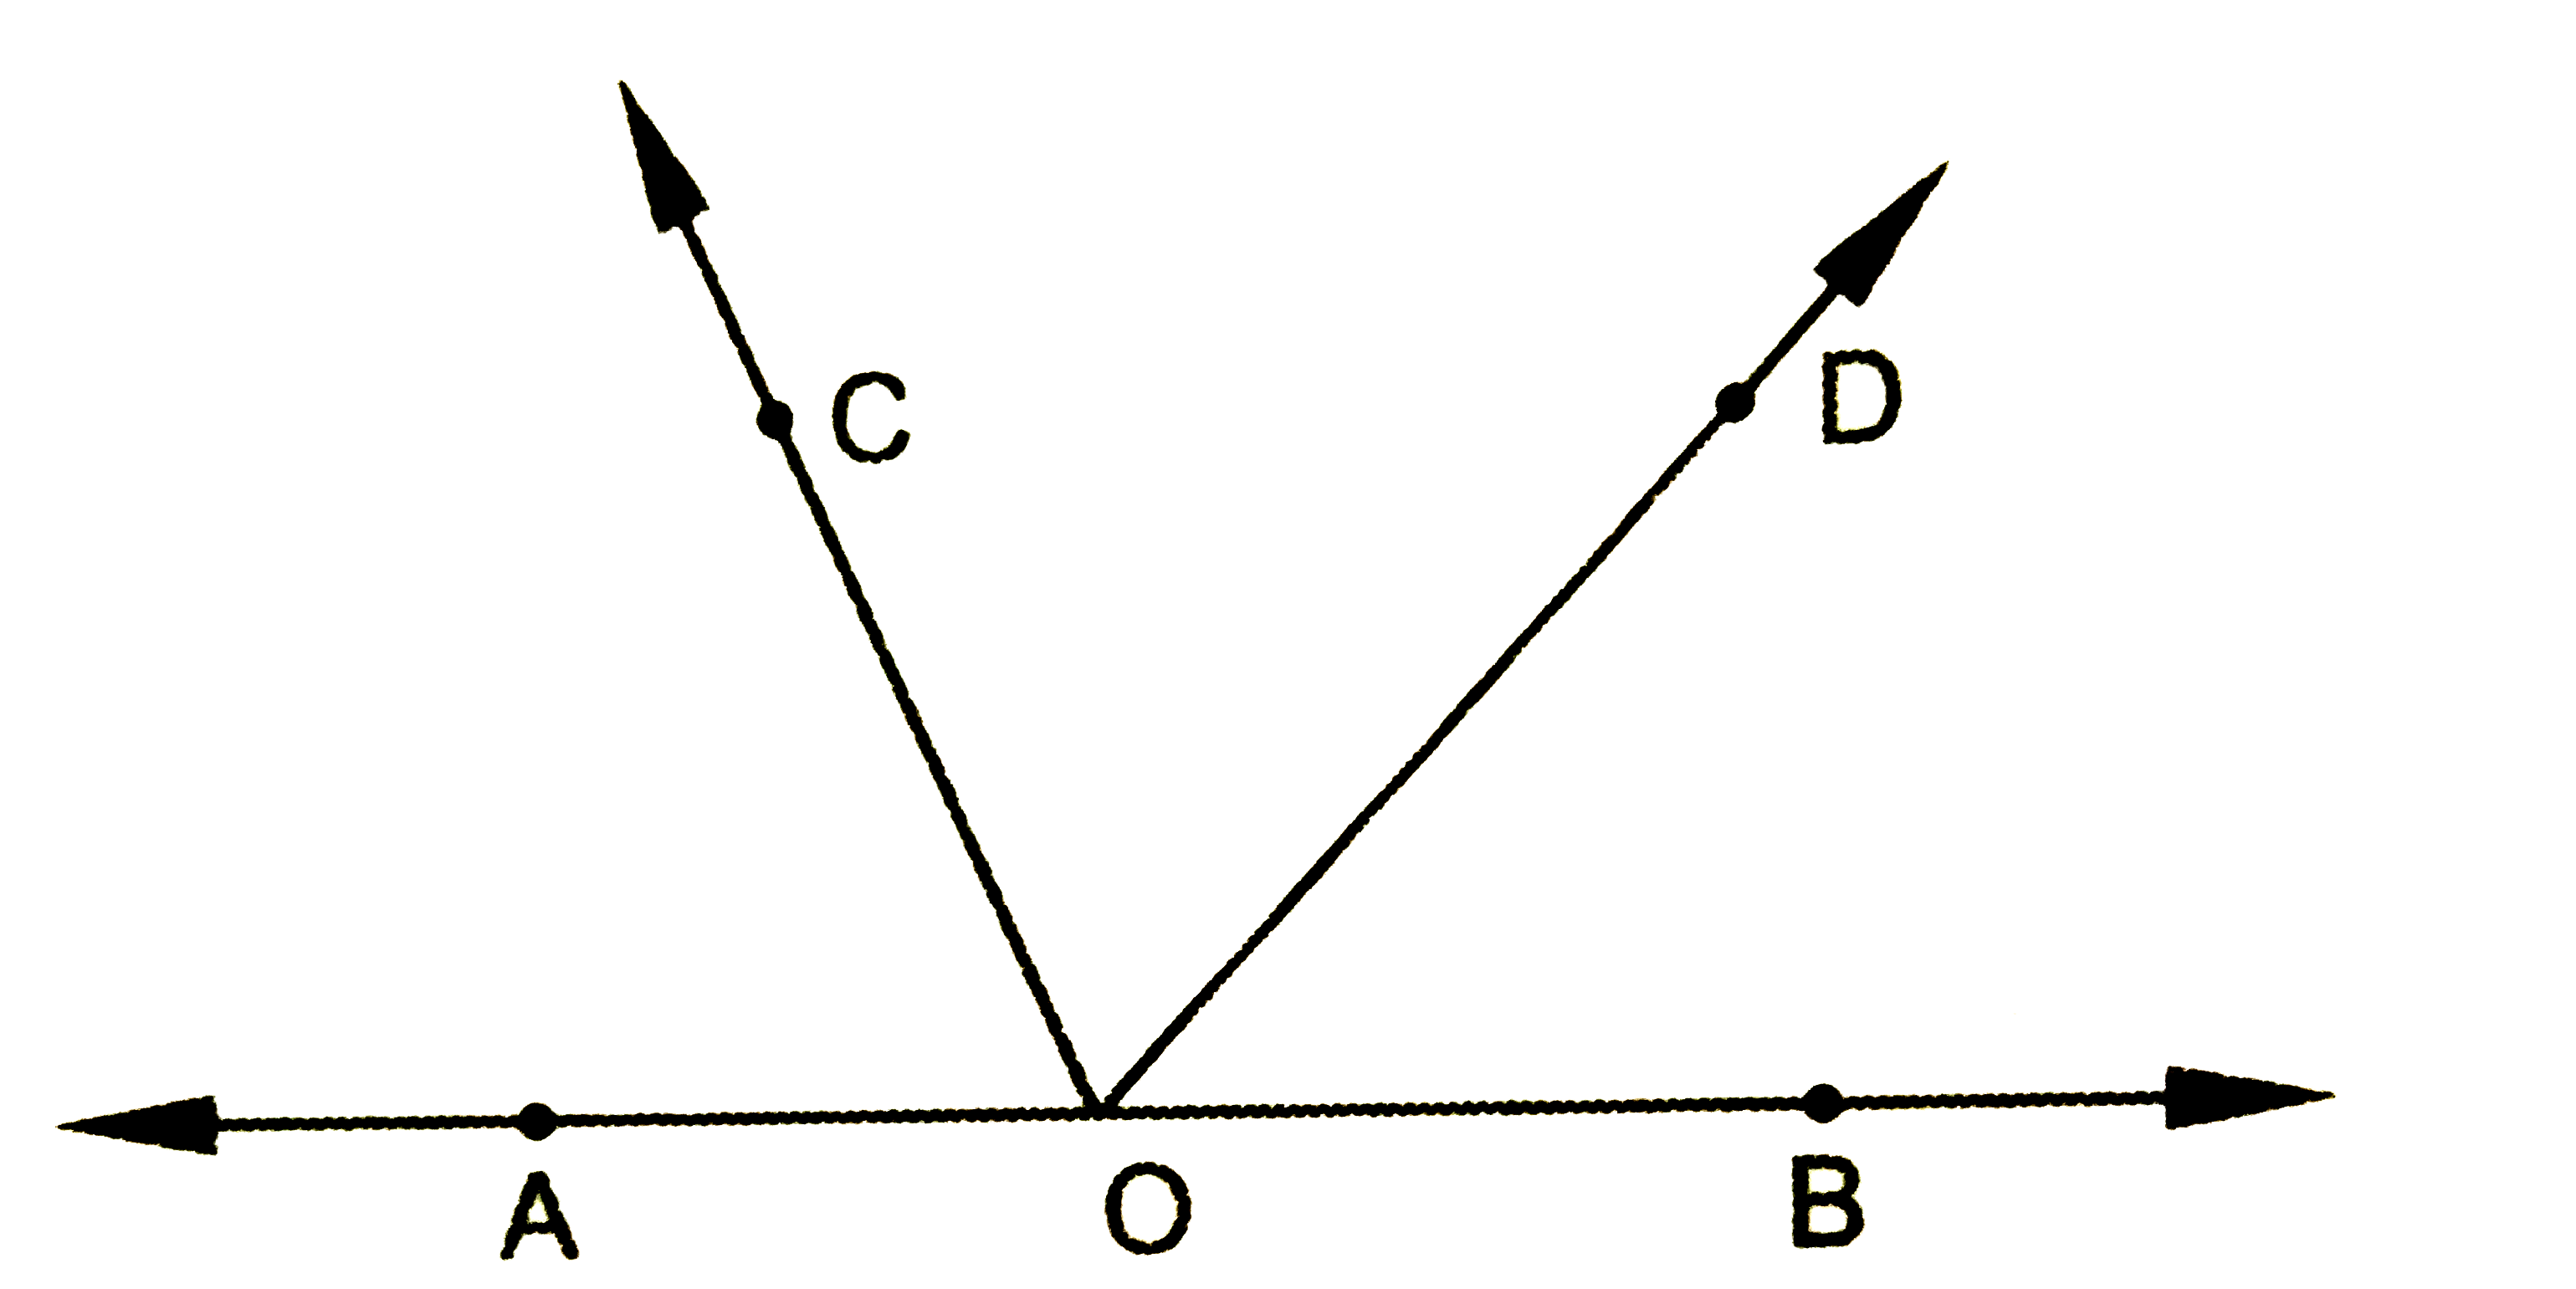 चित्र में AOB एक सरल रेखा है|यदि  angleAOC+ angle BOD =85^(@)  हो तो कोण COD का माप होगा|